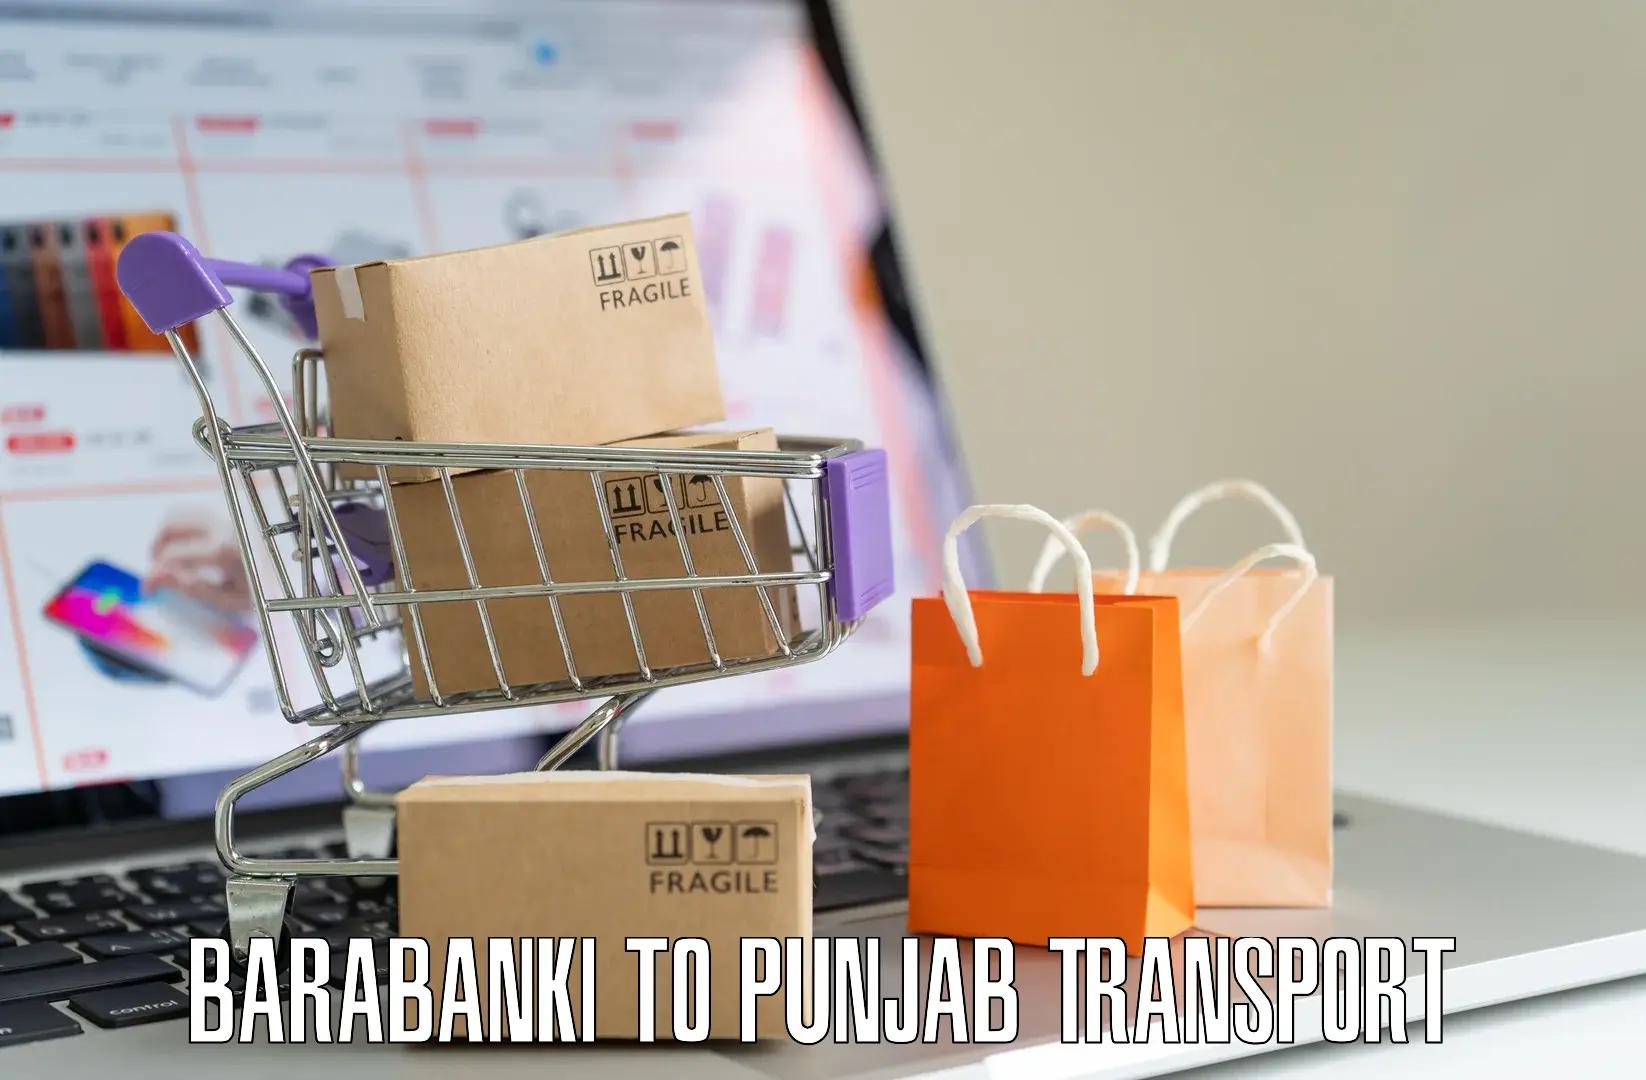 Transport in sharing Barabanki to NIT Jallandhar